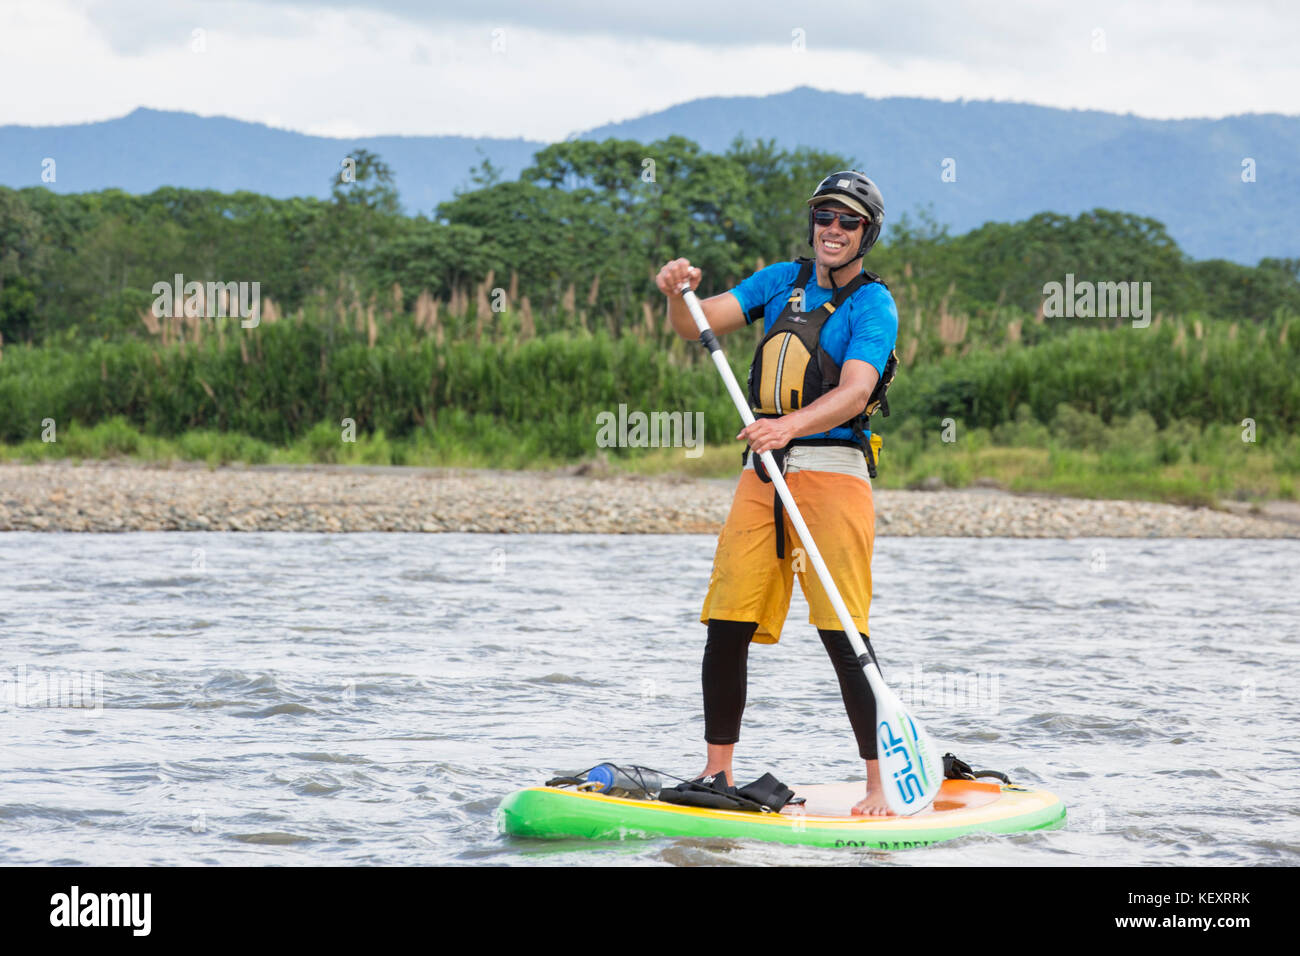 Uomo in stand-up paddleboard (SUP) sul alto (superiore) di Madre de Dios River nella giungla dell'Amazzonia peruviana, Perù. Foto Stock